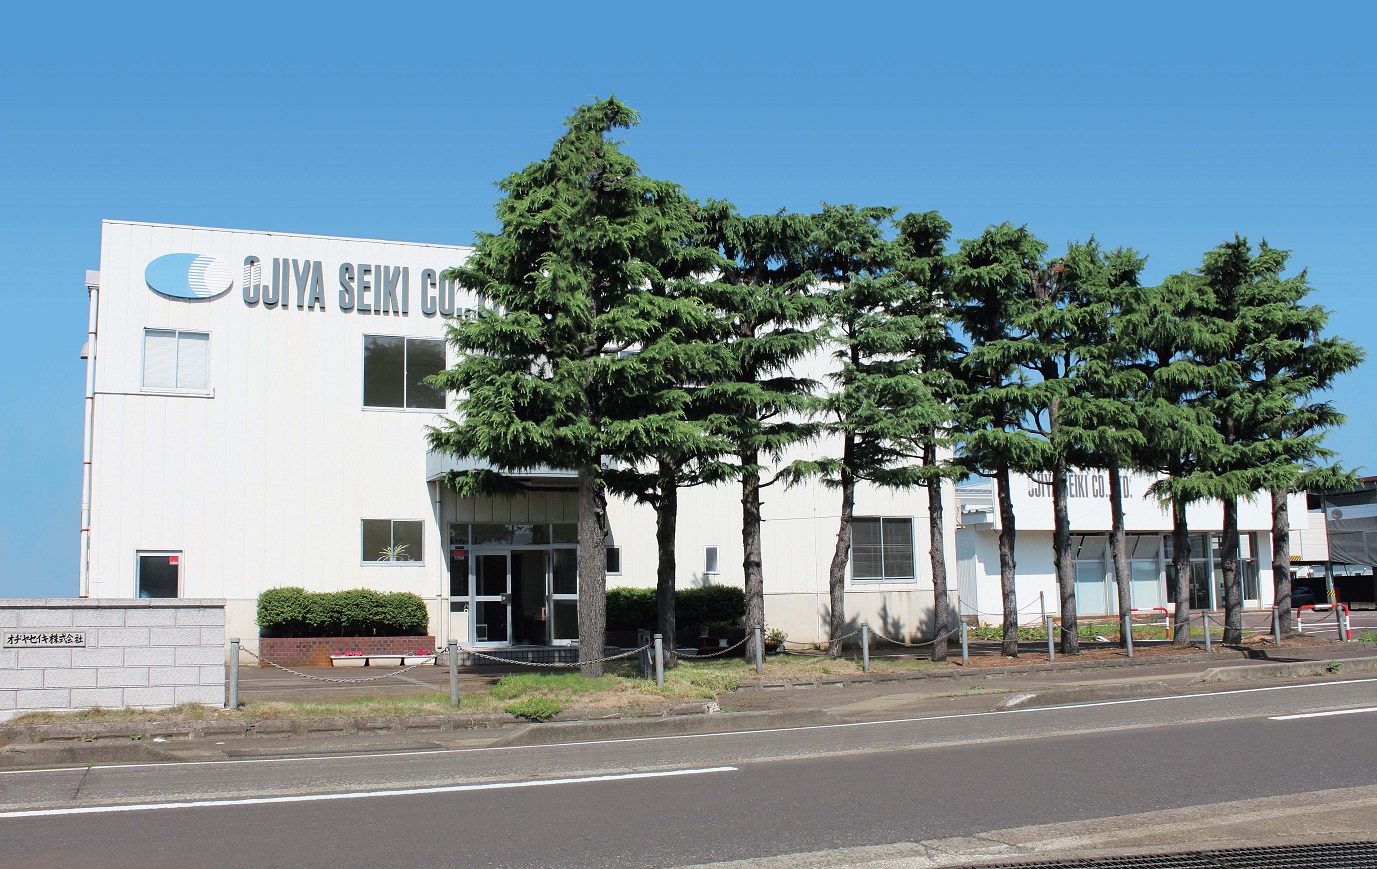 Ojiya Seiki Co., Ltd.